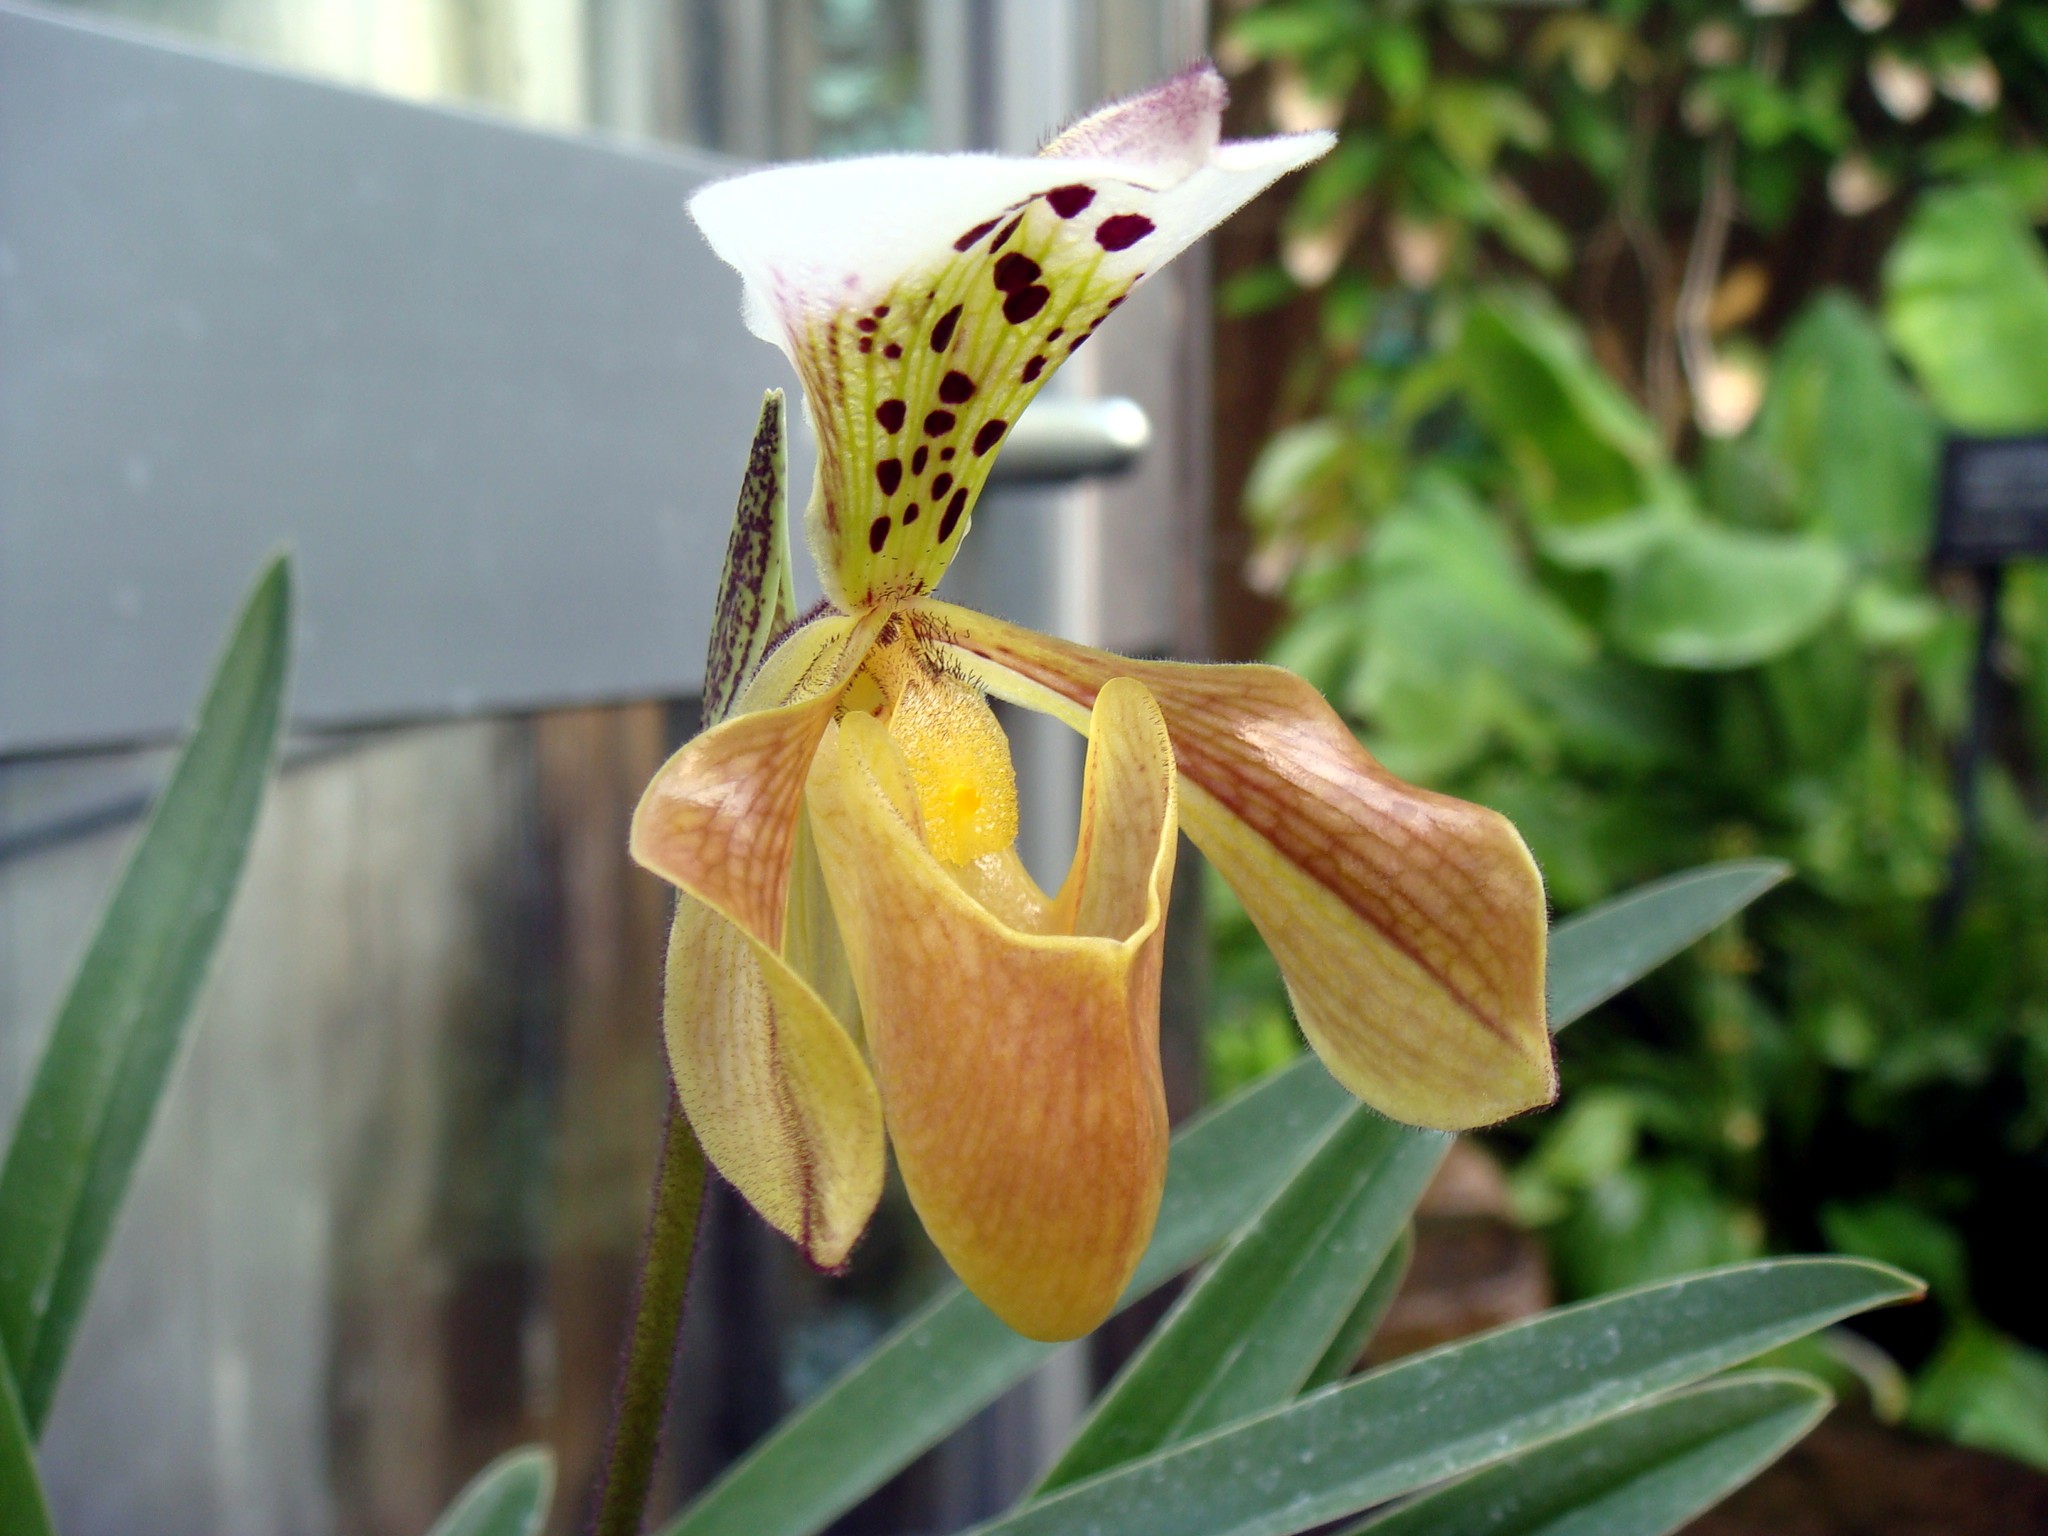 http://orchids.la.coocan.jp/Paphiopedilum/Paphiopedilum%20gratrixianum/DSC05442.JPG